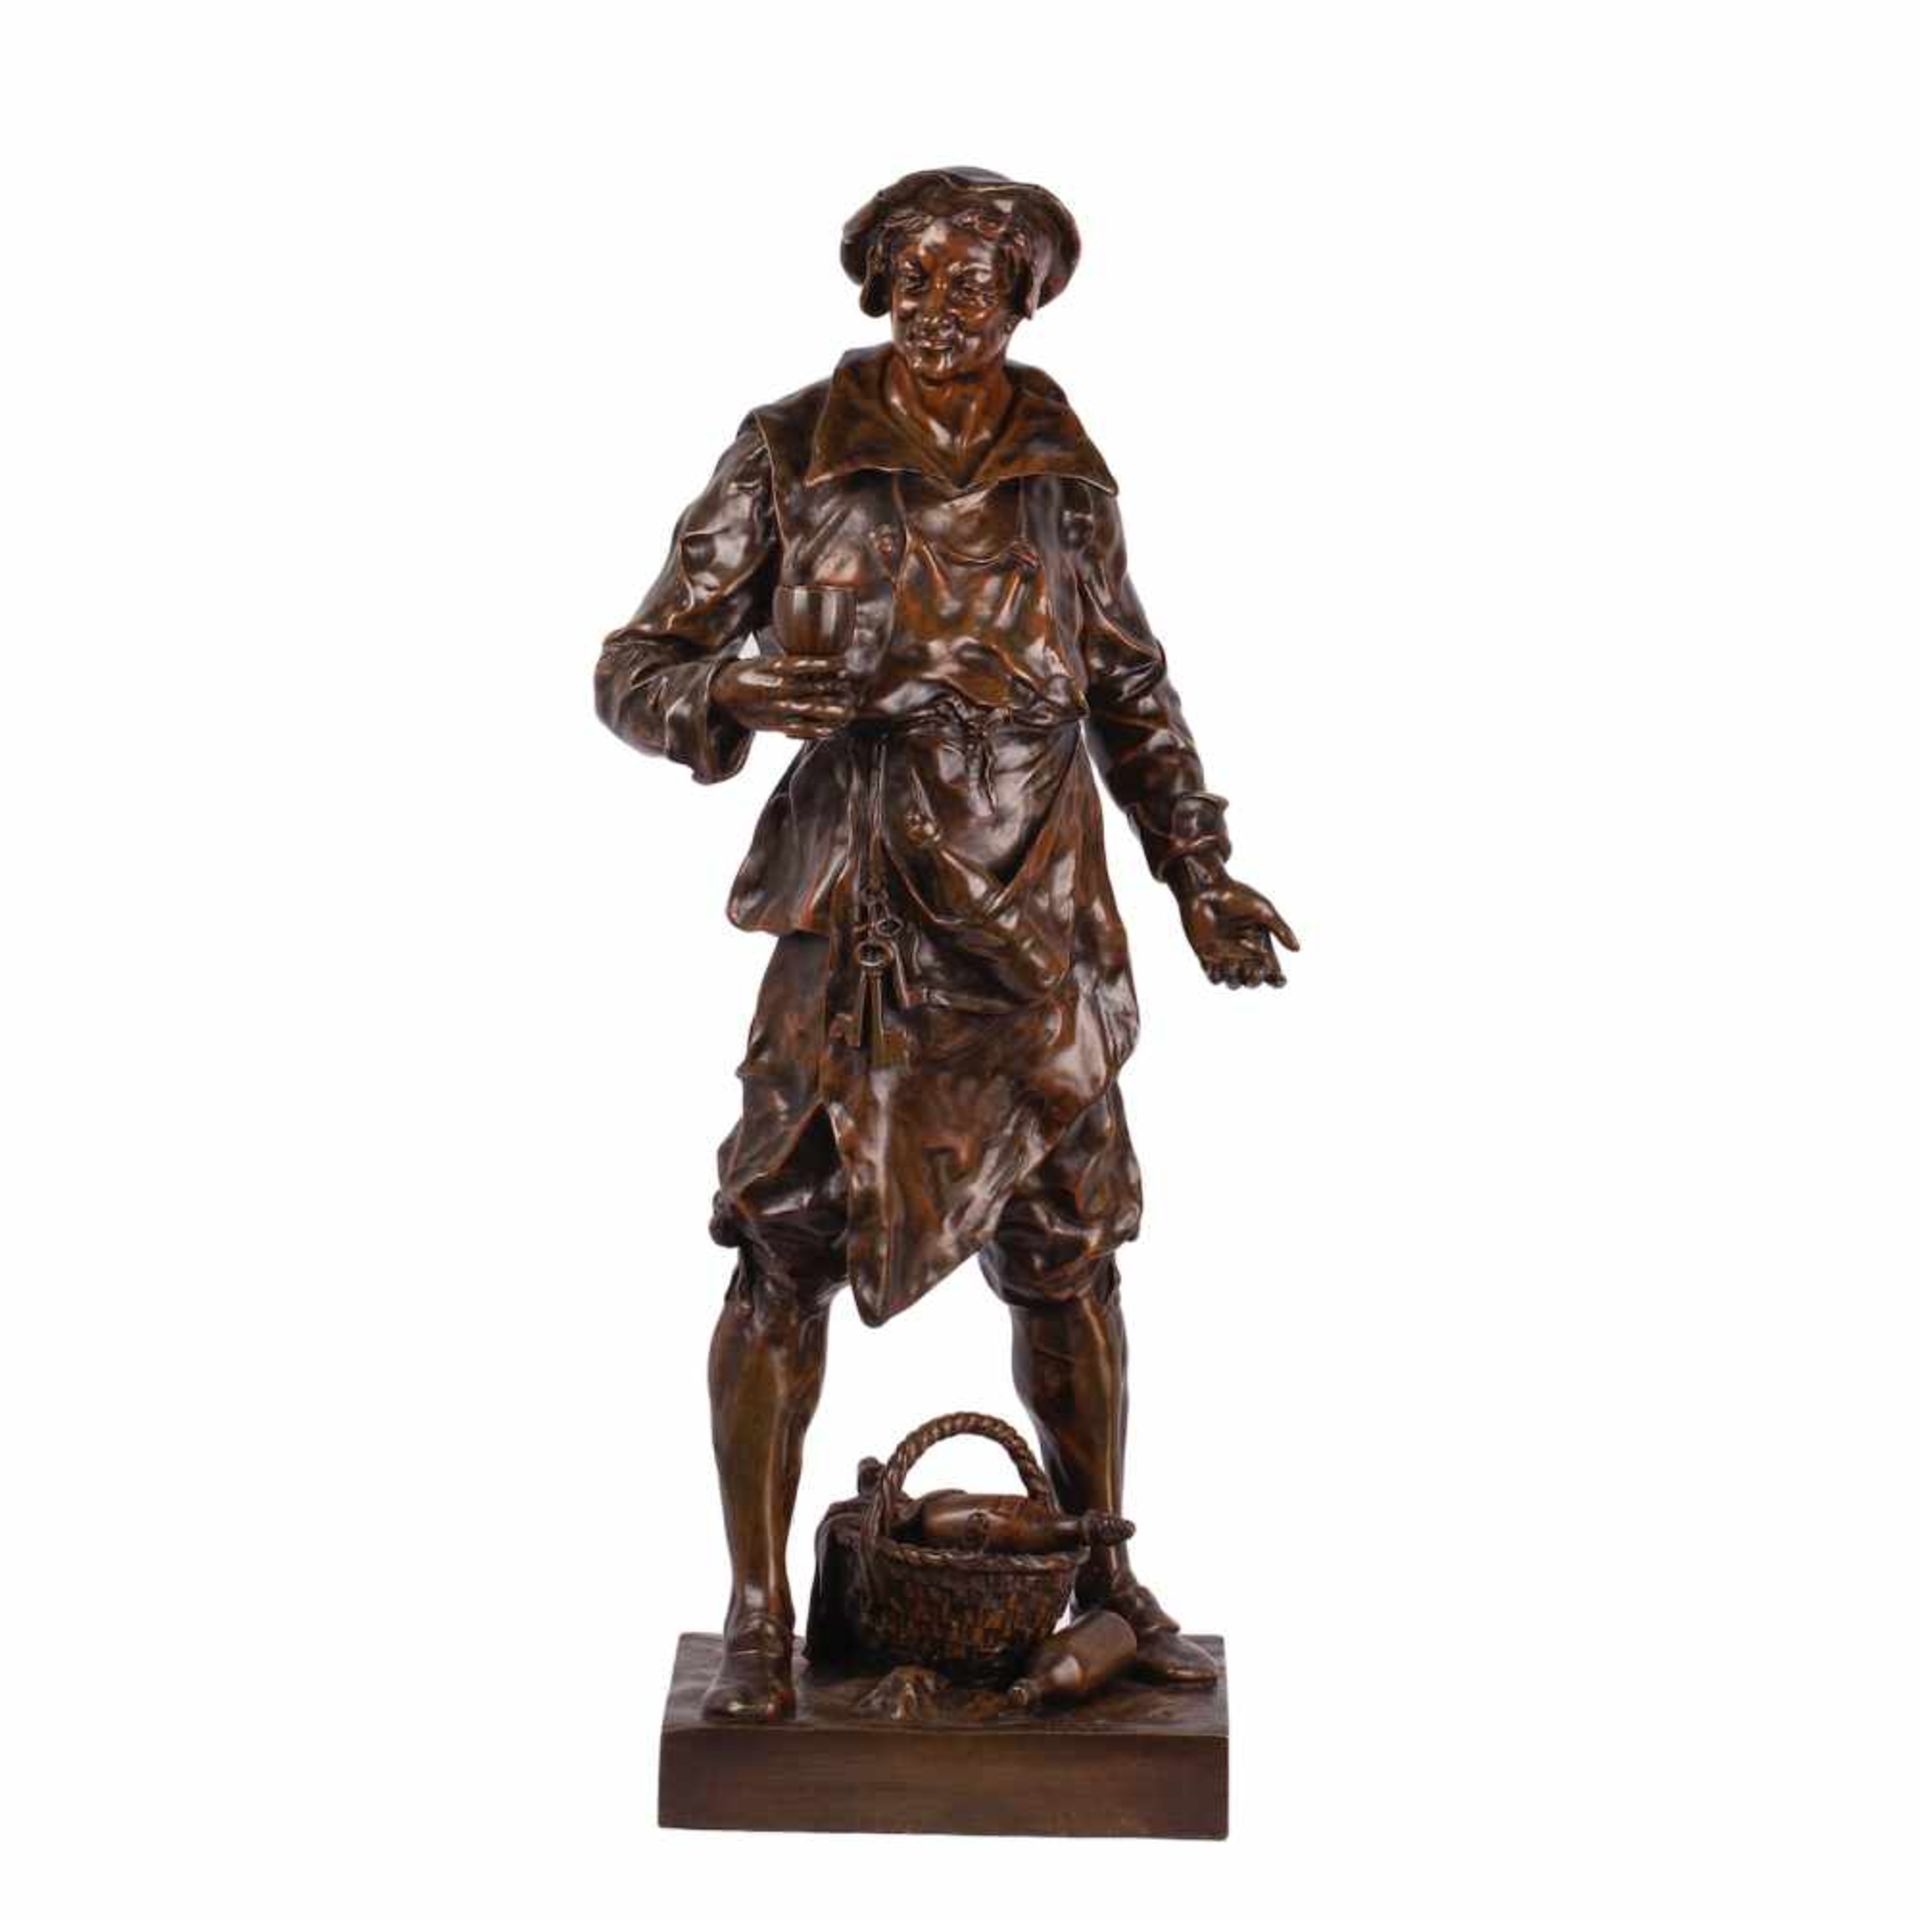 Exceptional Rare Bronze Figure “LE SOMMELIER”Exceptional Rare Bronze Figure “Le Somellier” by